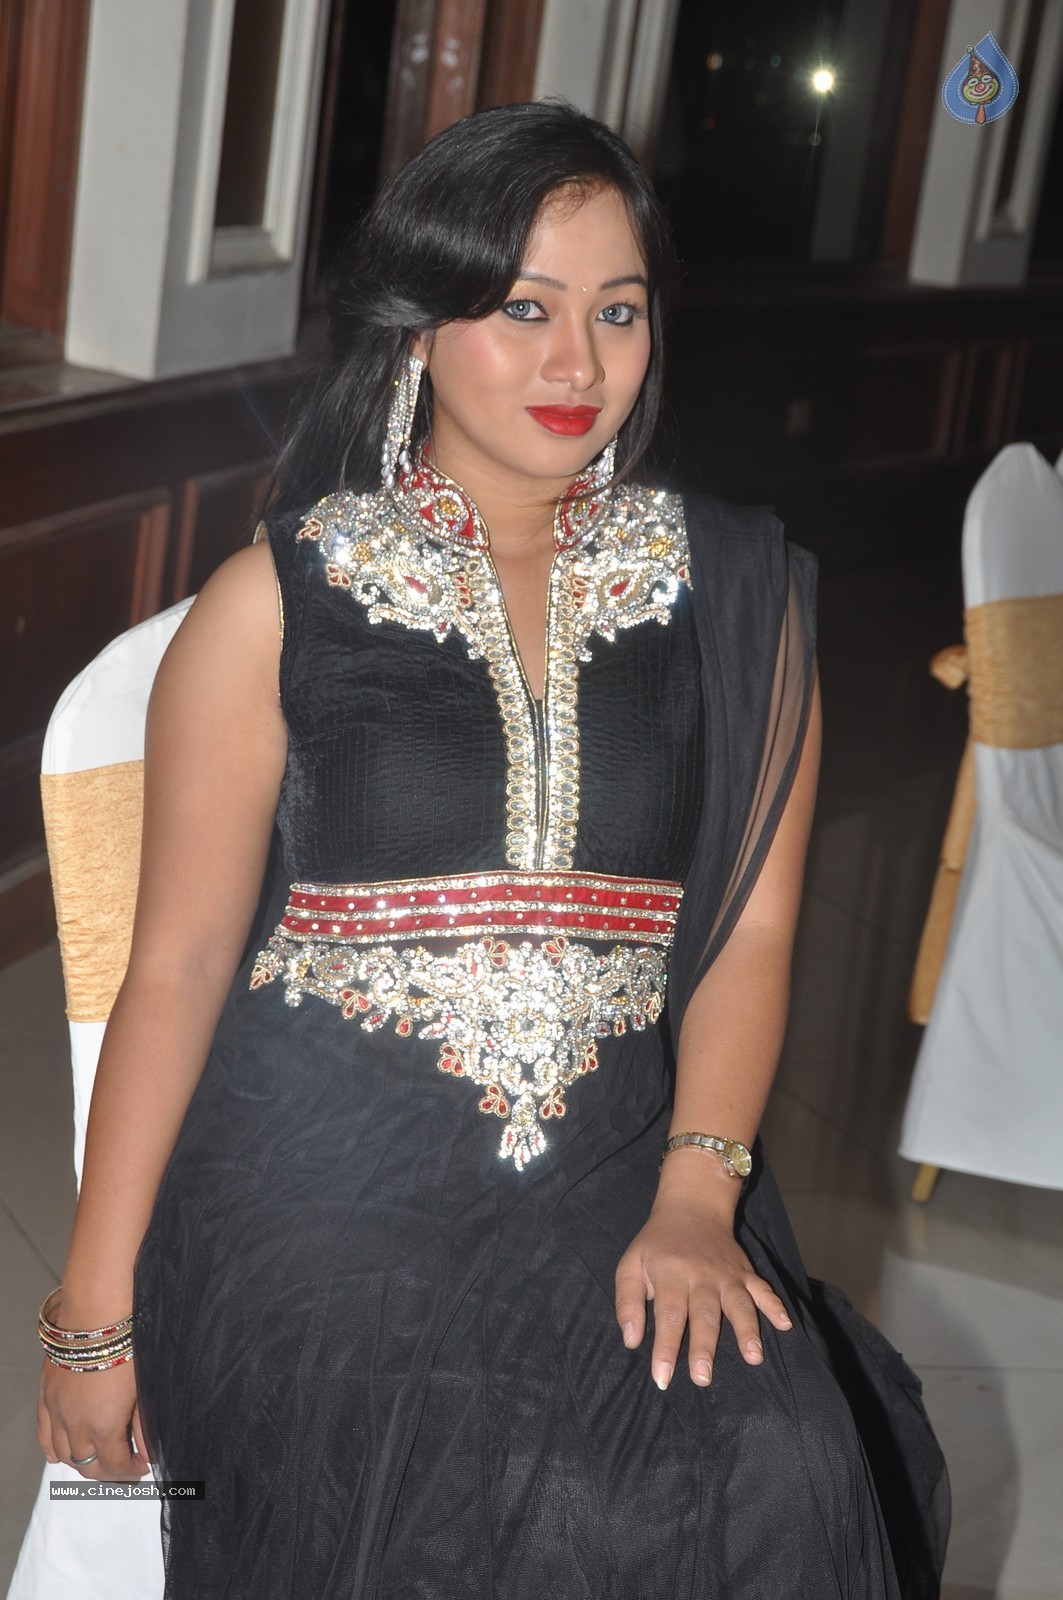 Actress Sneha Photos - 10 / 62 photos